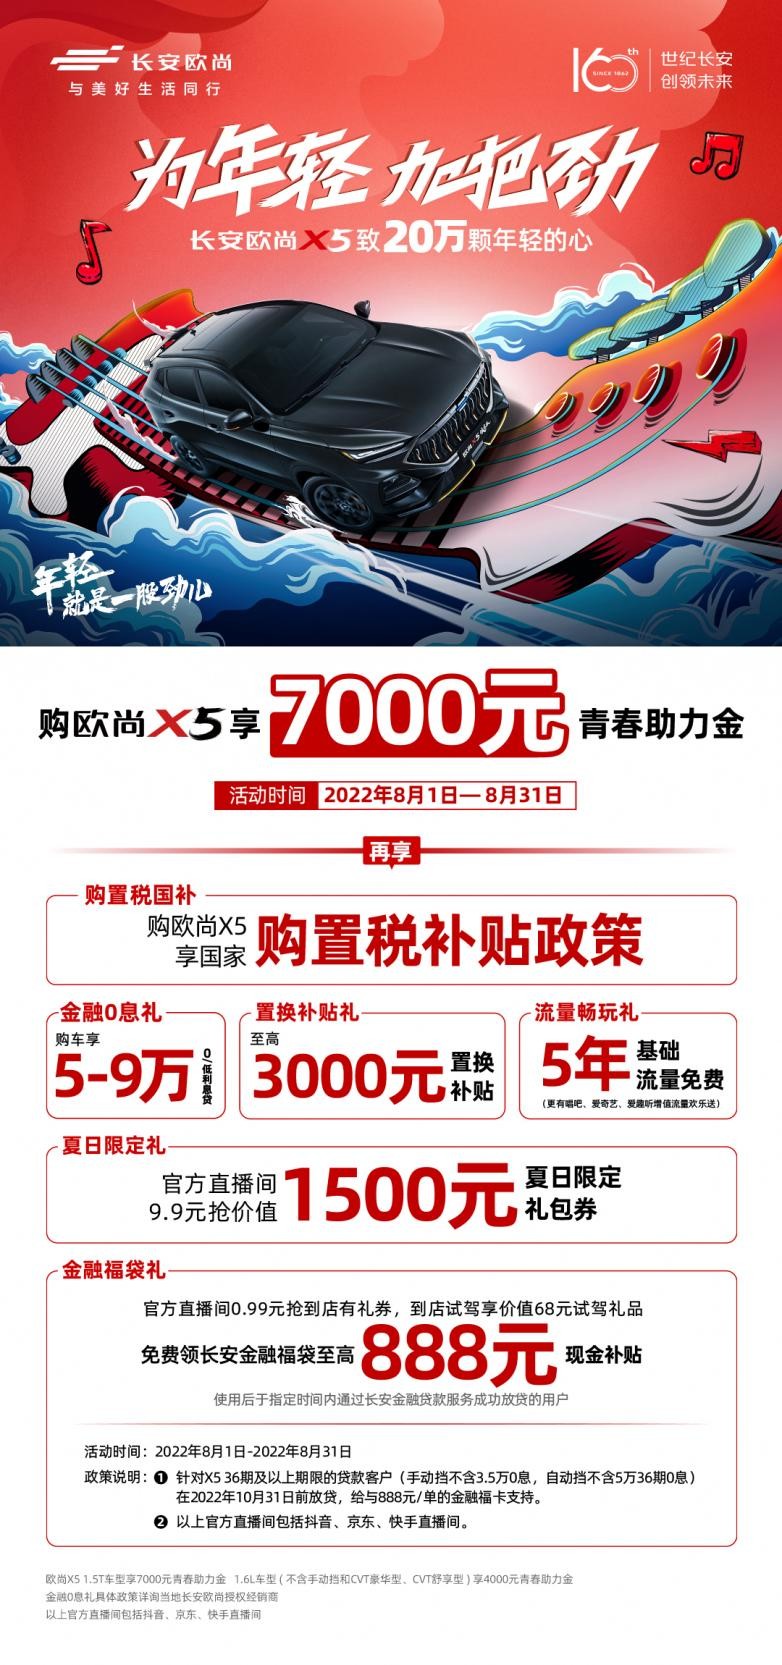 再迎里程碑 欧尚X5第20万辆下线 7重豪礼助力销售